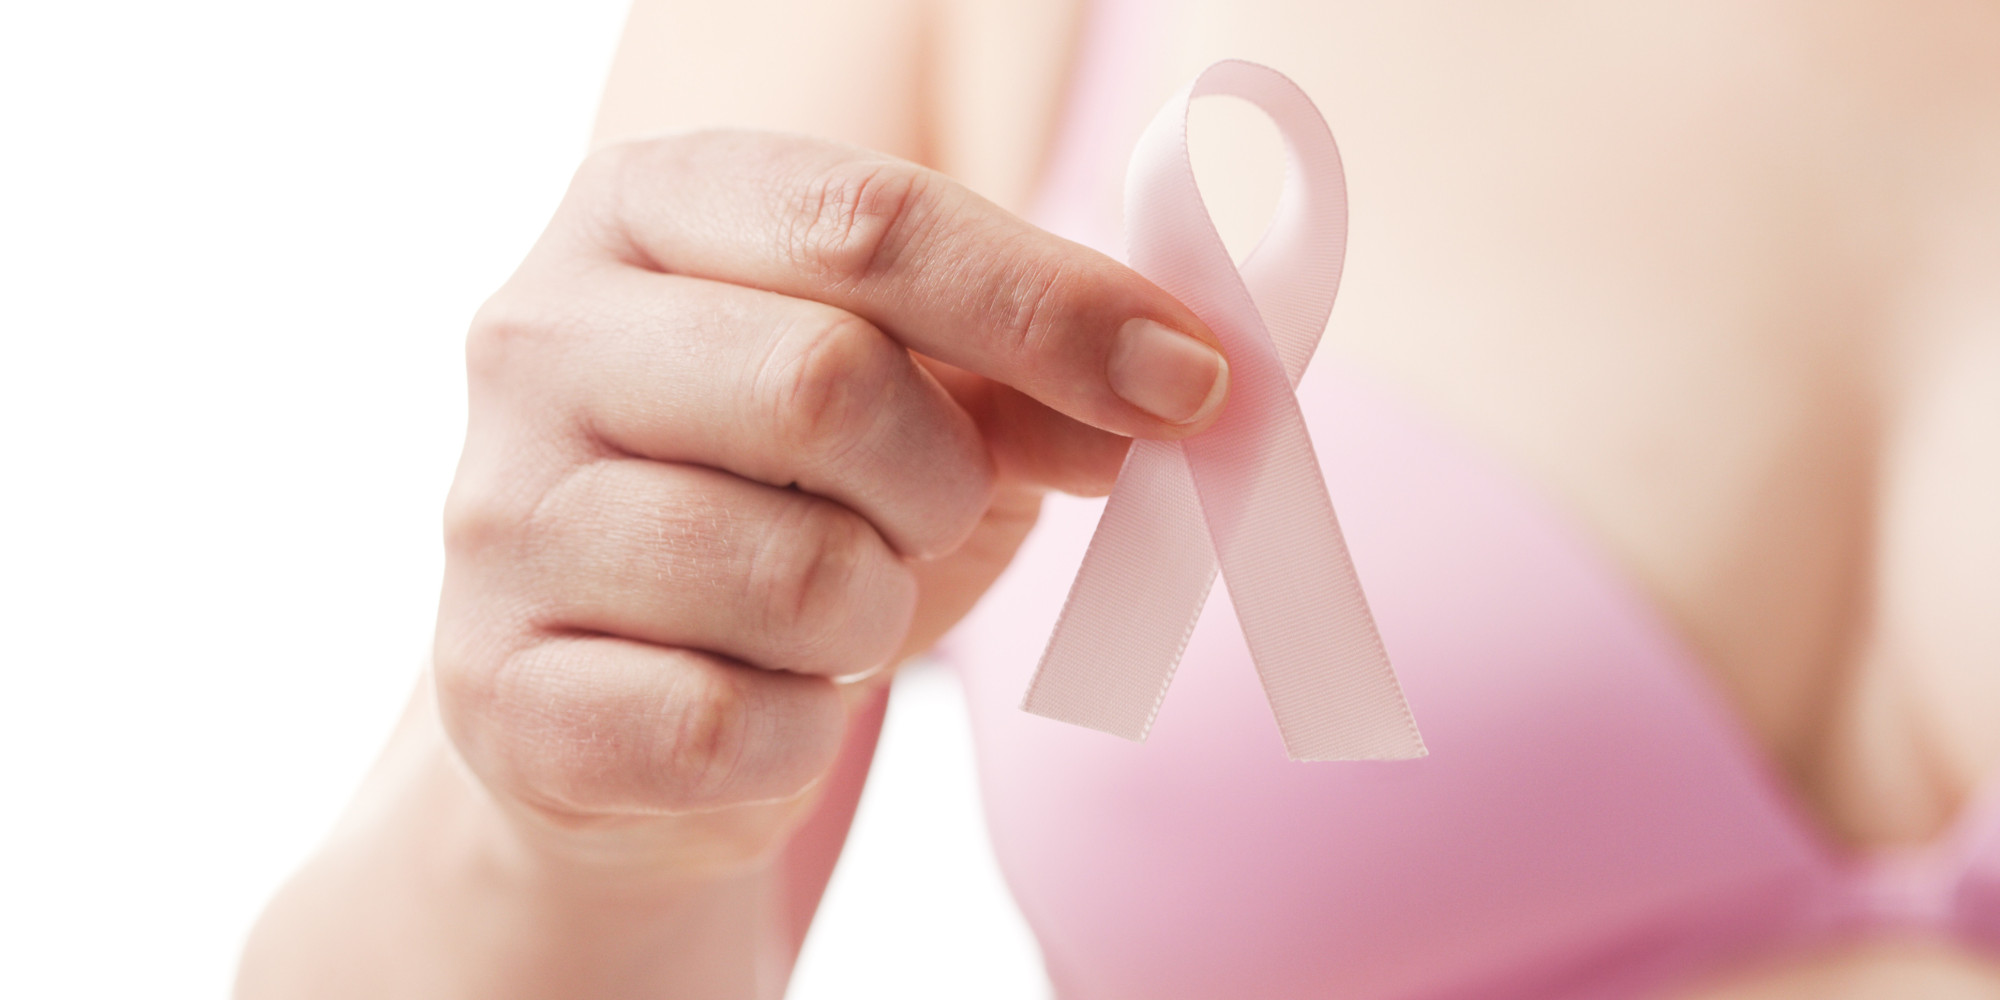   Ngồi nhiều làm tăng nguy cơ ung thư vú  